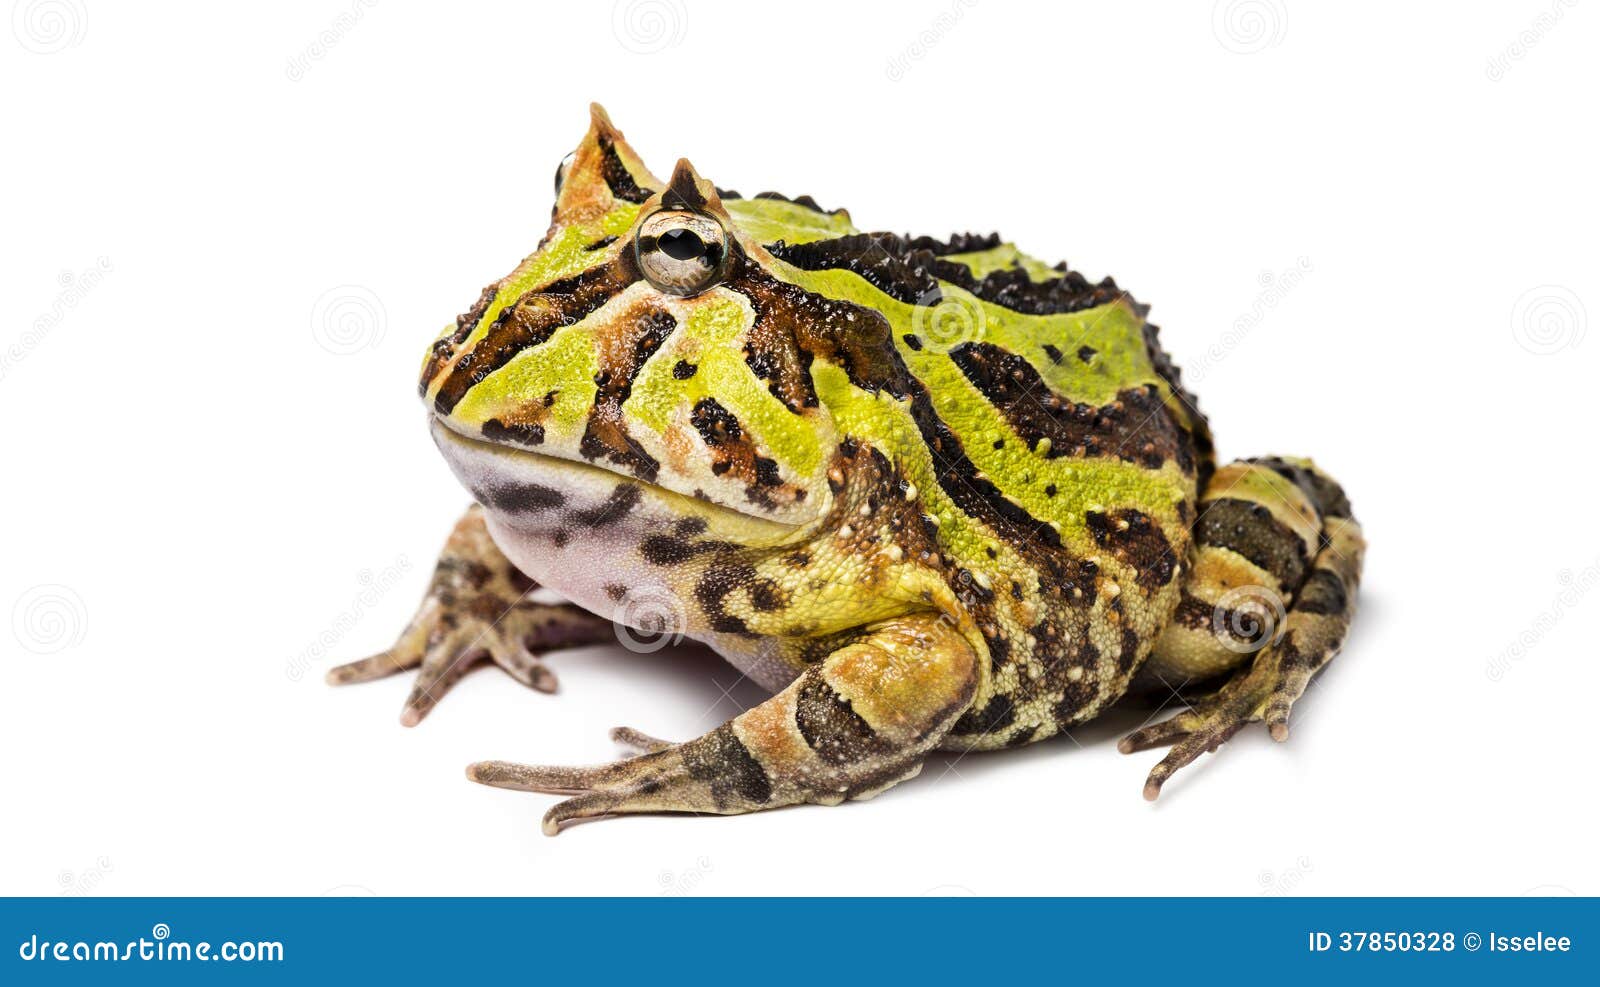 argentine horned frog, ceratophrys ornata